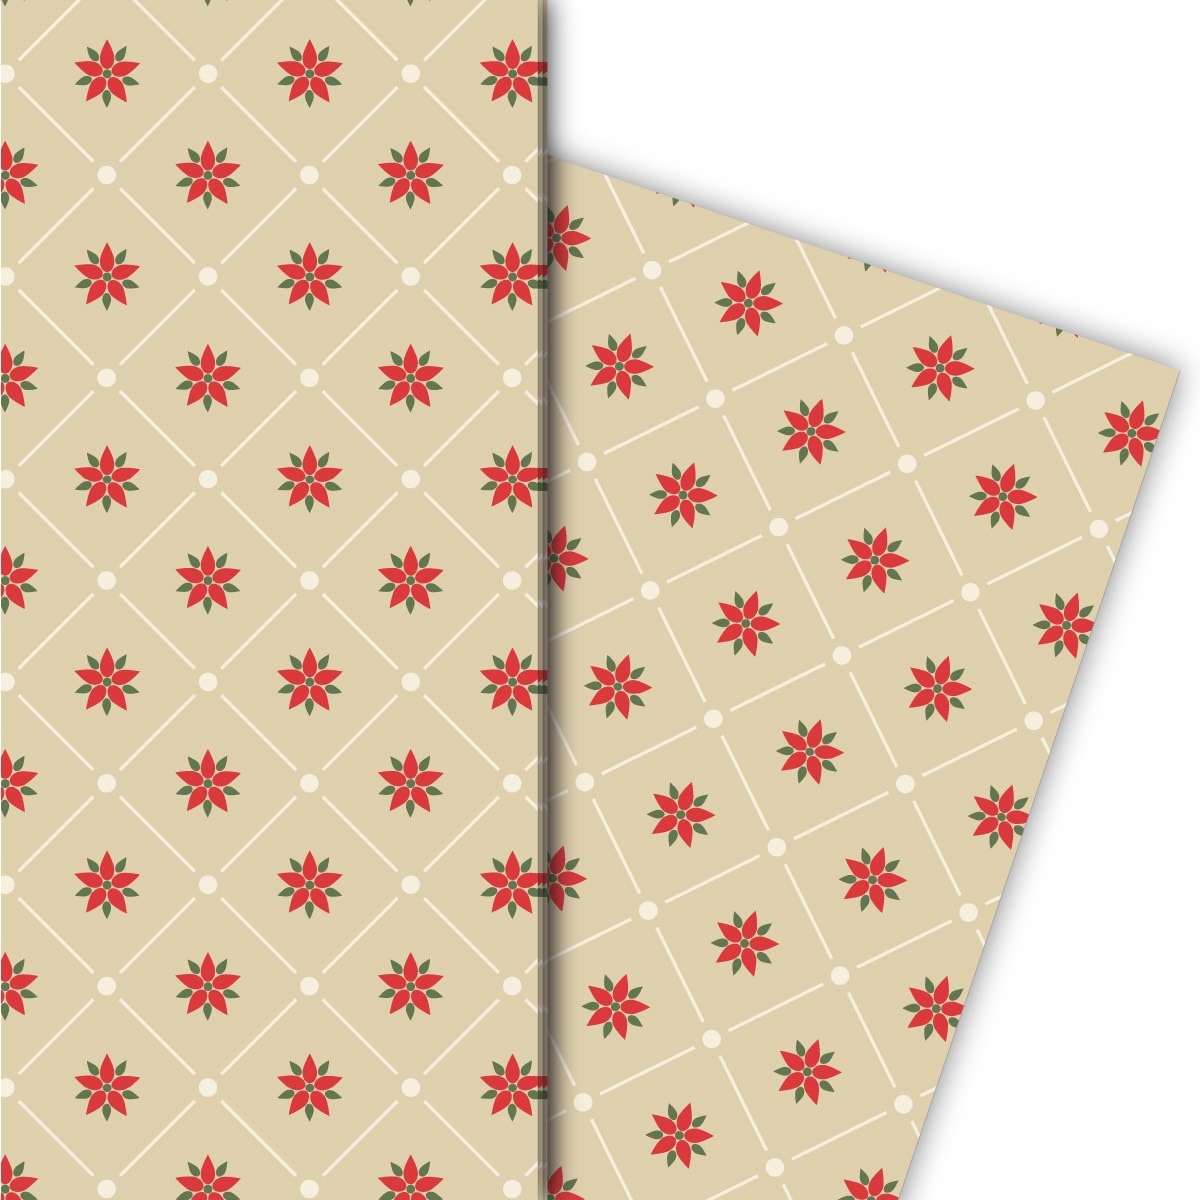 Kartenkaufrausch: Edles grafisches Weihnachts Geschenkpapier aus unserer Weihnachts Papeterie in beige